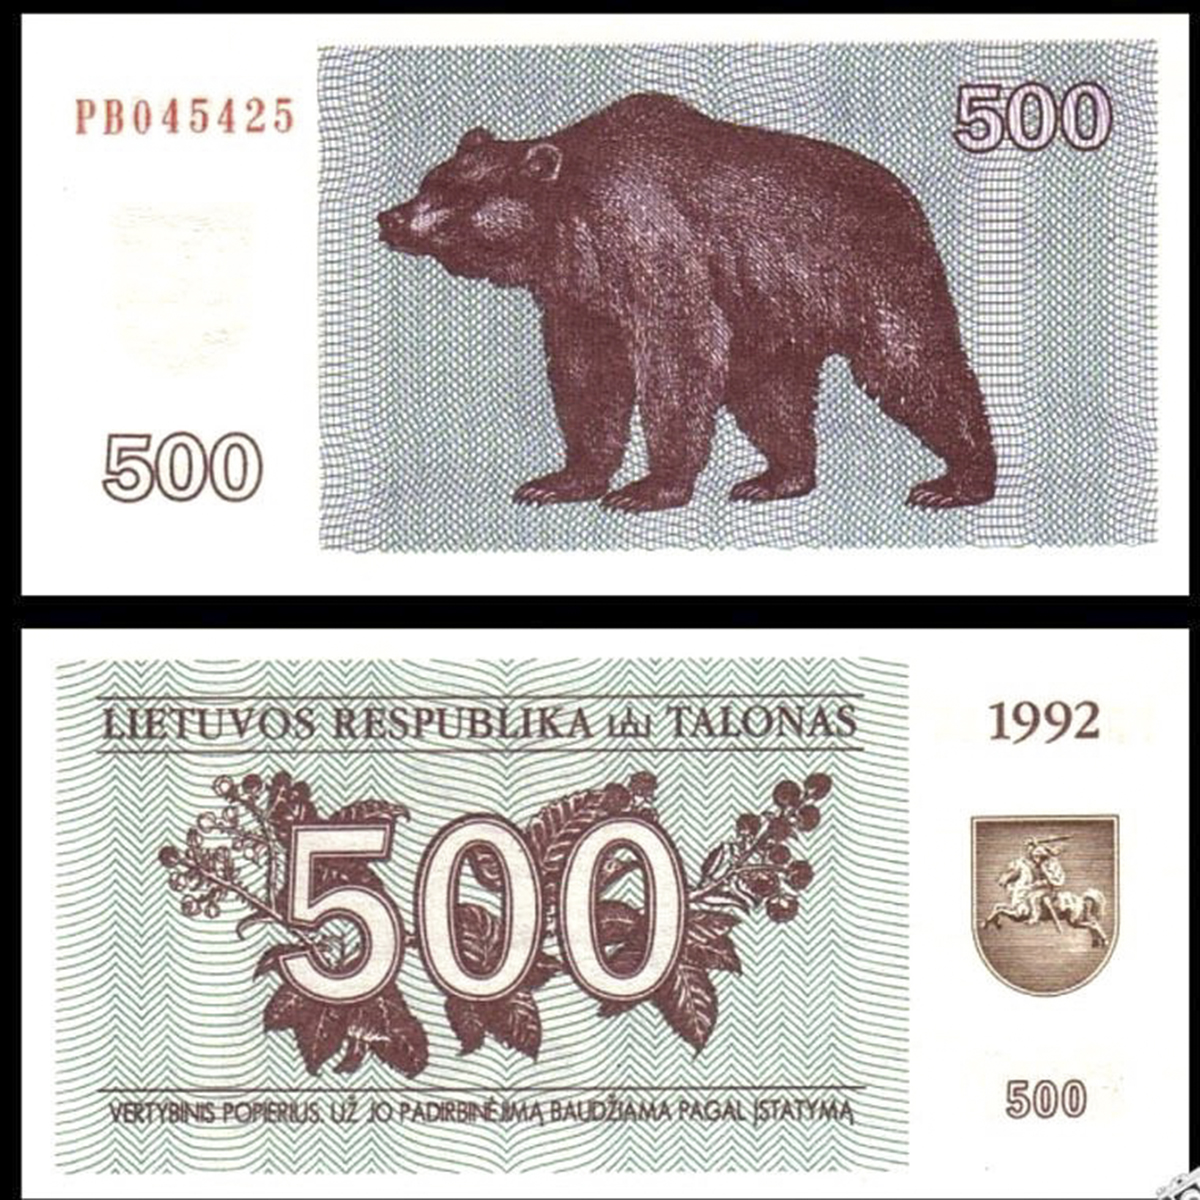 Lithuania 500 tanolas 1992